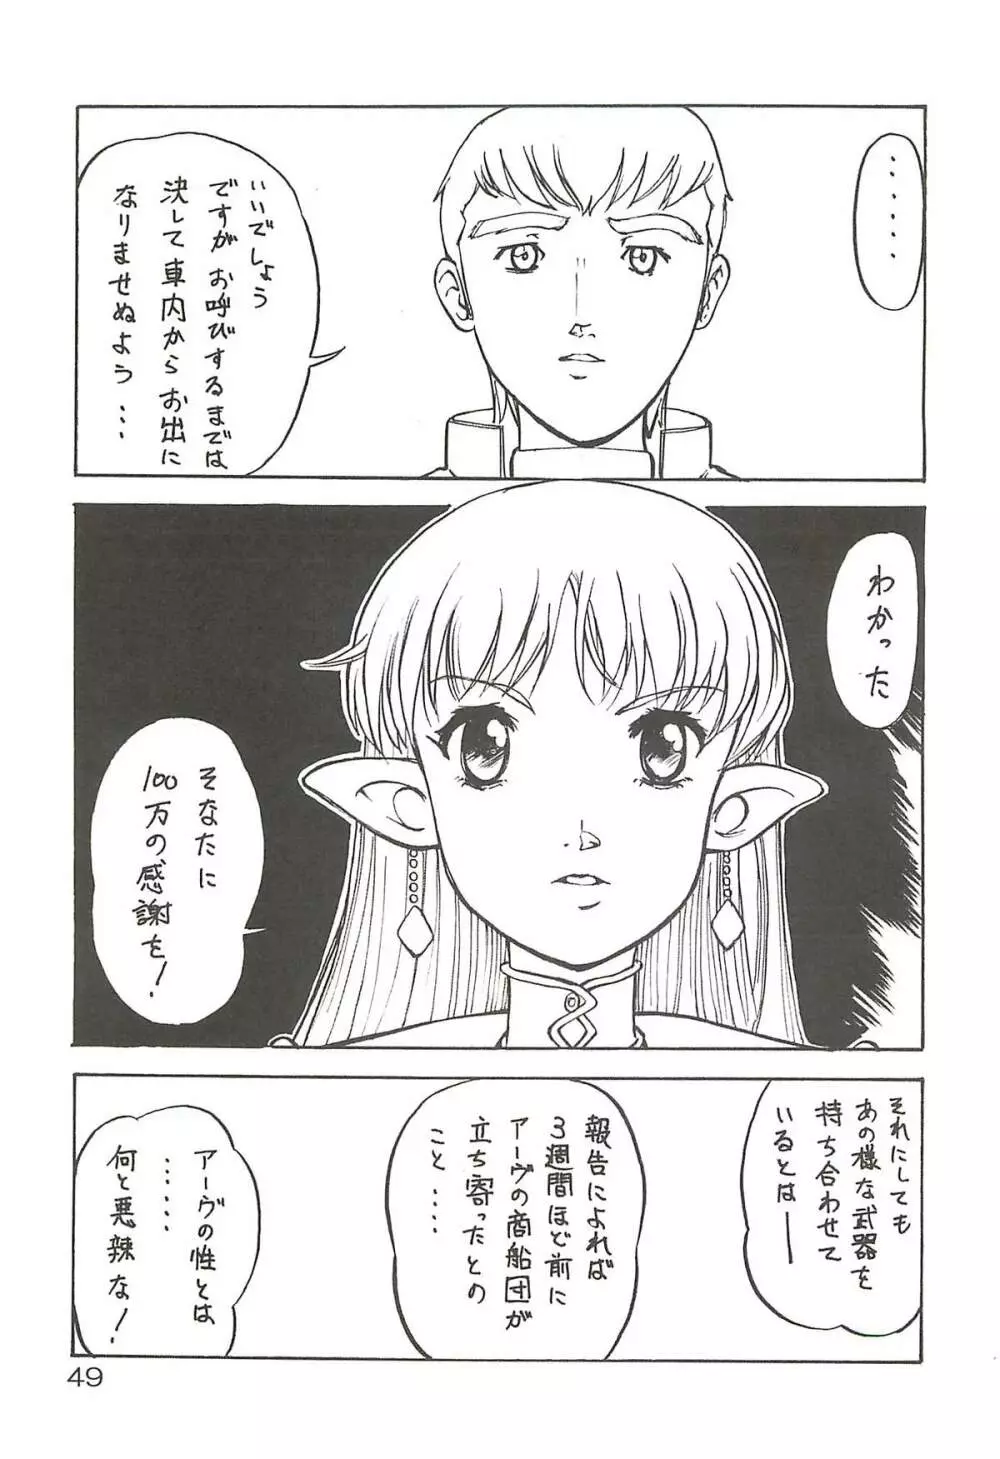 追放覚悟 Special edition Phase1 - page48